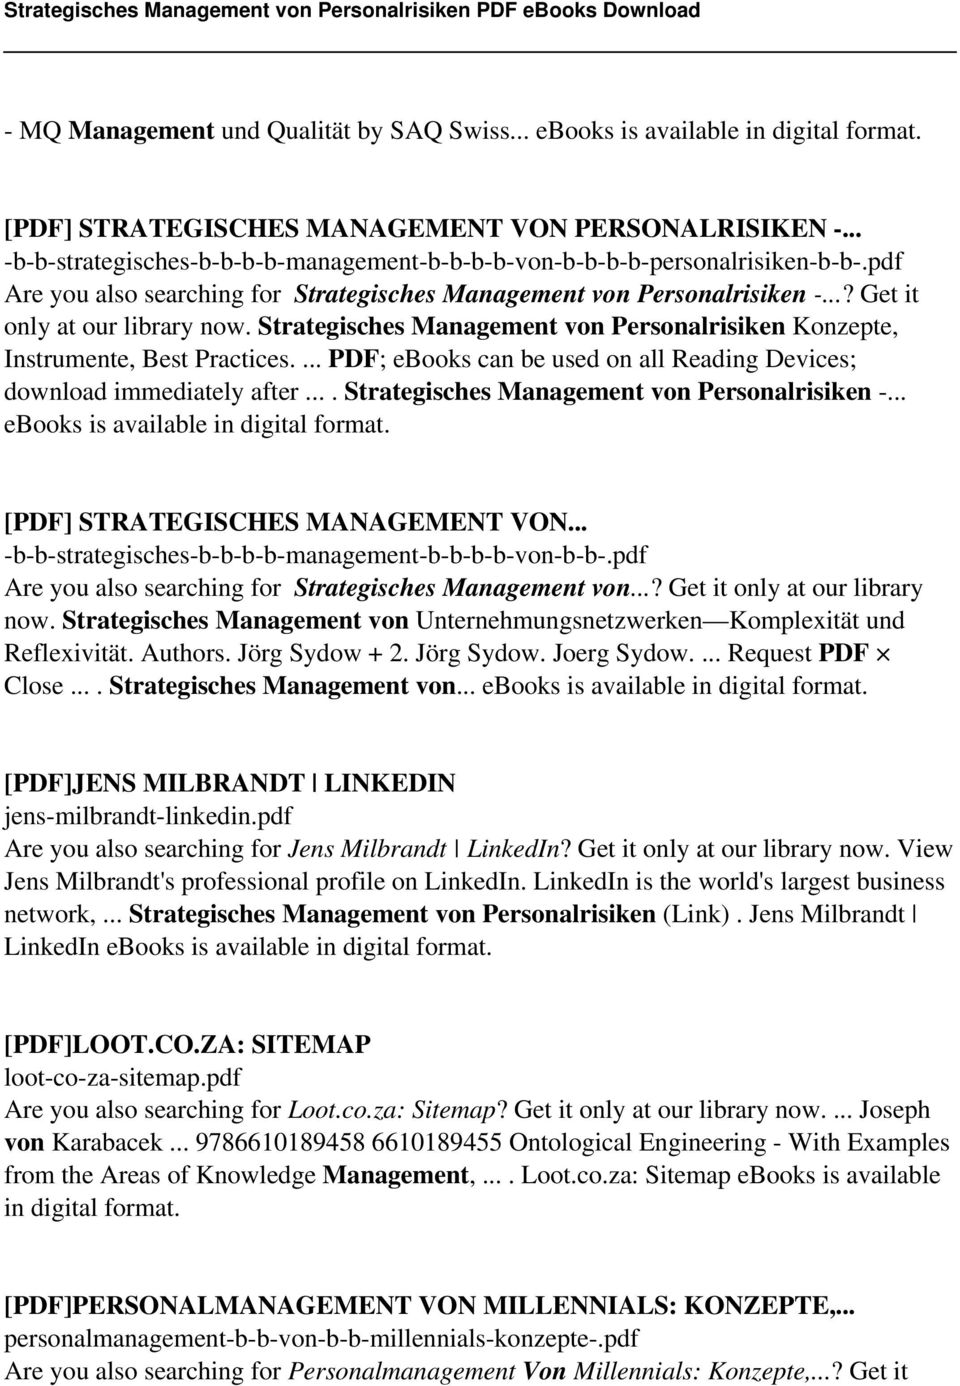 ... Strategisches Management von Personalrisiken -... ebooks is [PDF] STRATEGISCHES MANAGEMENT VON... -b-b-strategisches-b-b-b-b-management-b-b-b-b-von-b-b-.